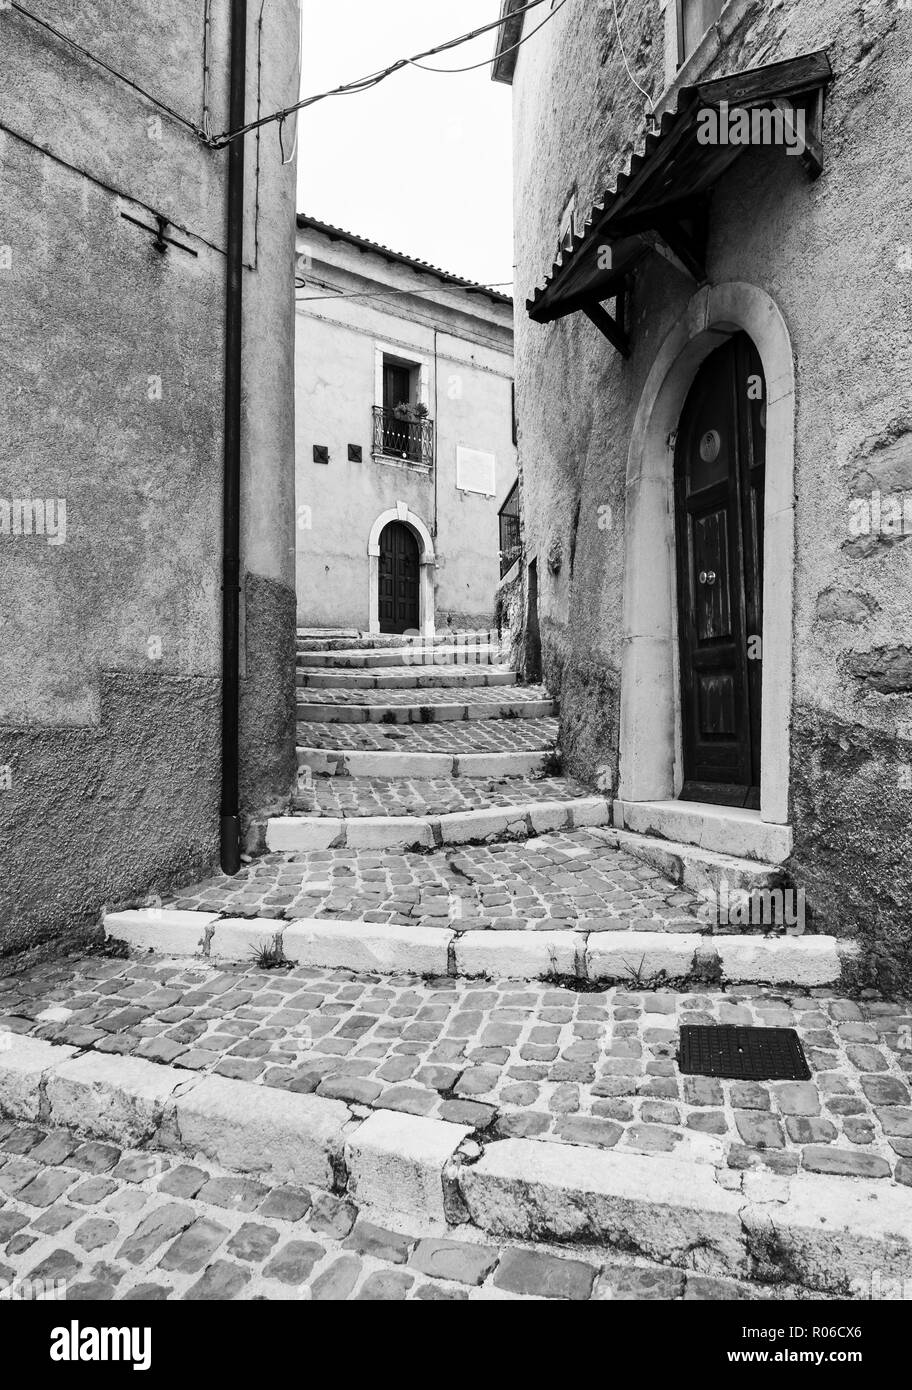 Opi, Italia - Il piccolo e suggestivo paese di pietra su una collina nel cuore del Parco Nazionale d'Abruzzo, Lazio e Molise. Qui il centro storico. Foto Stock